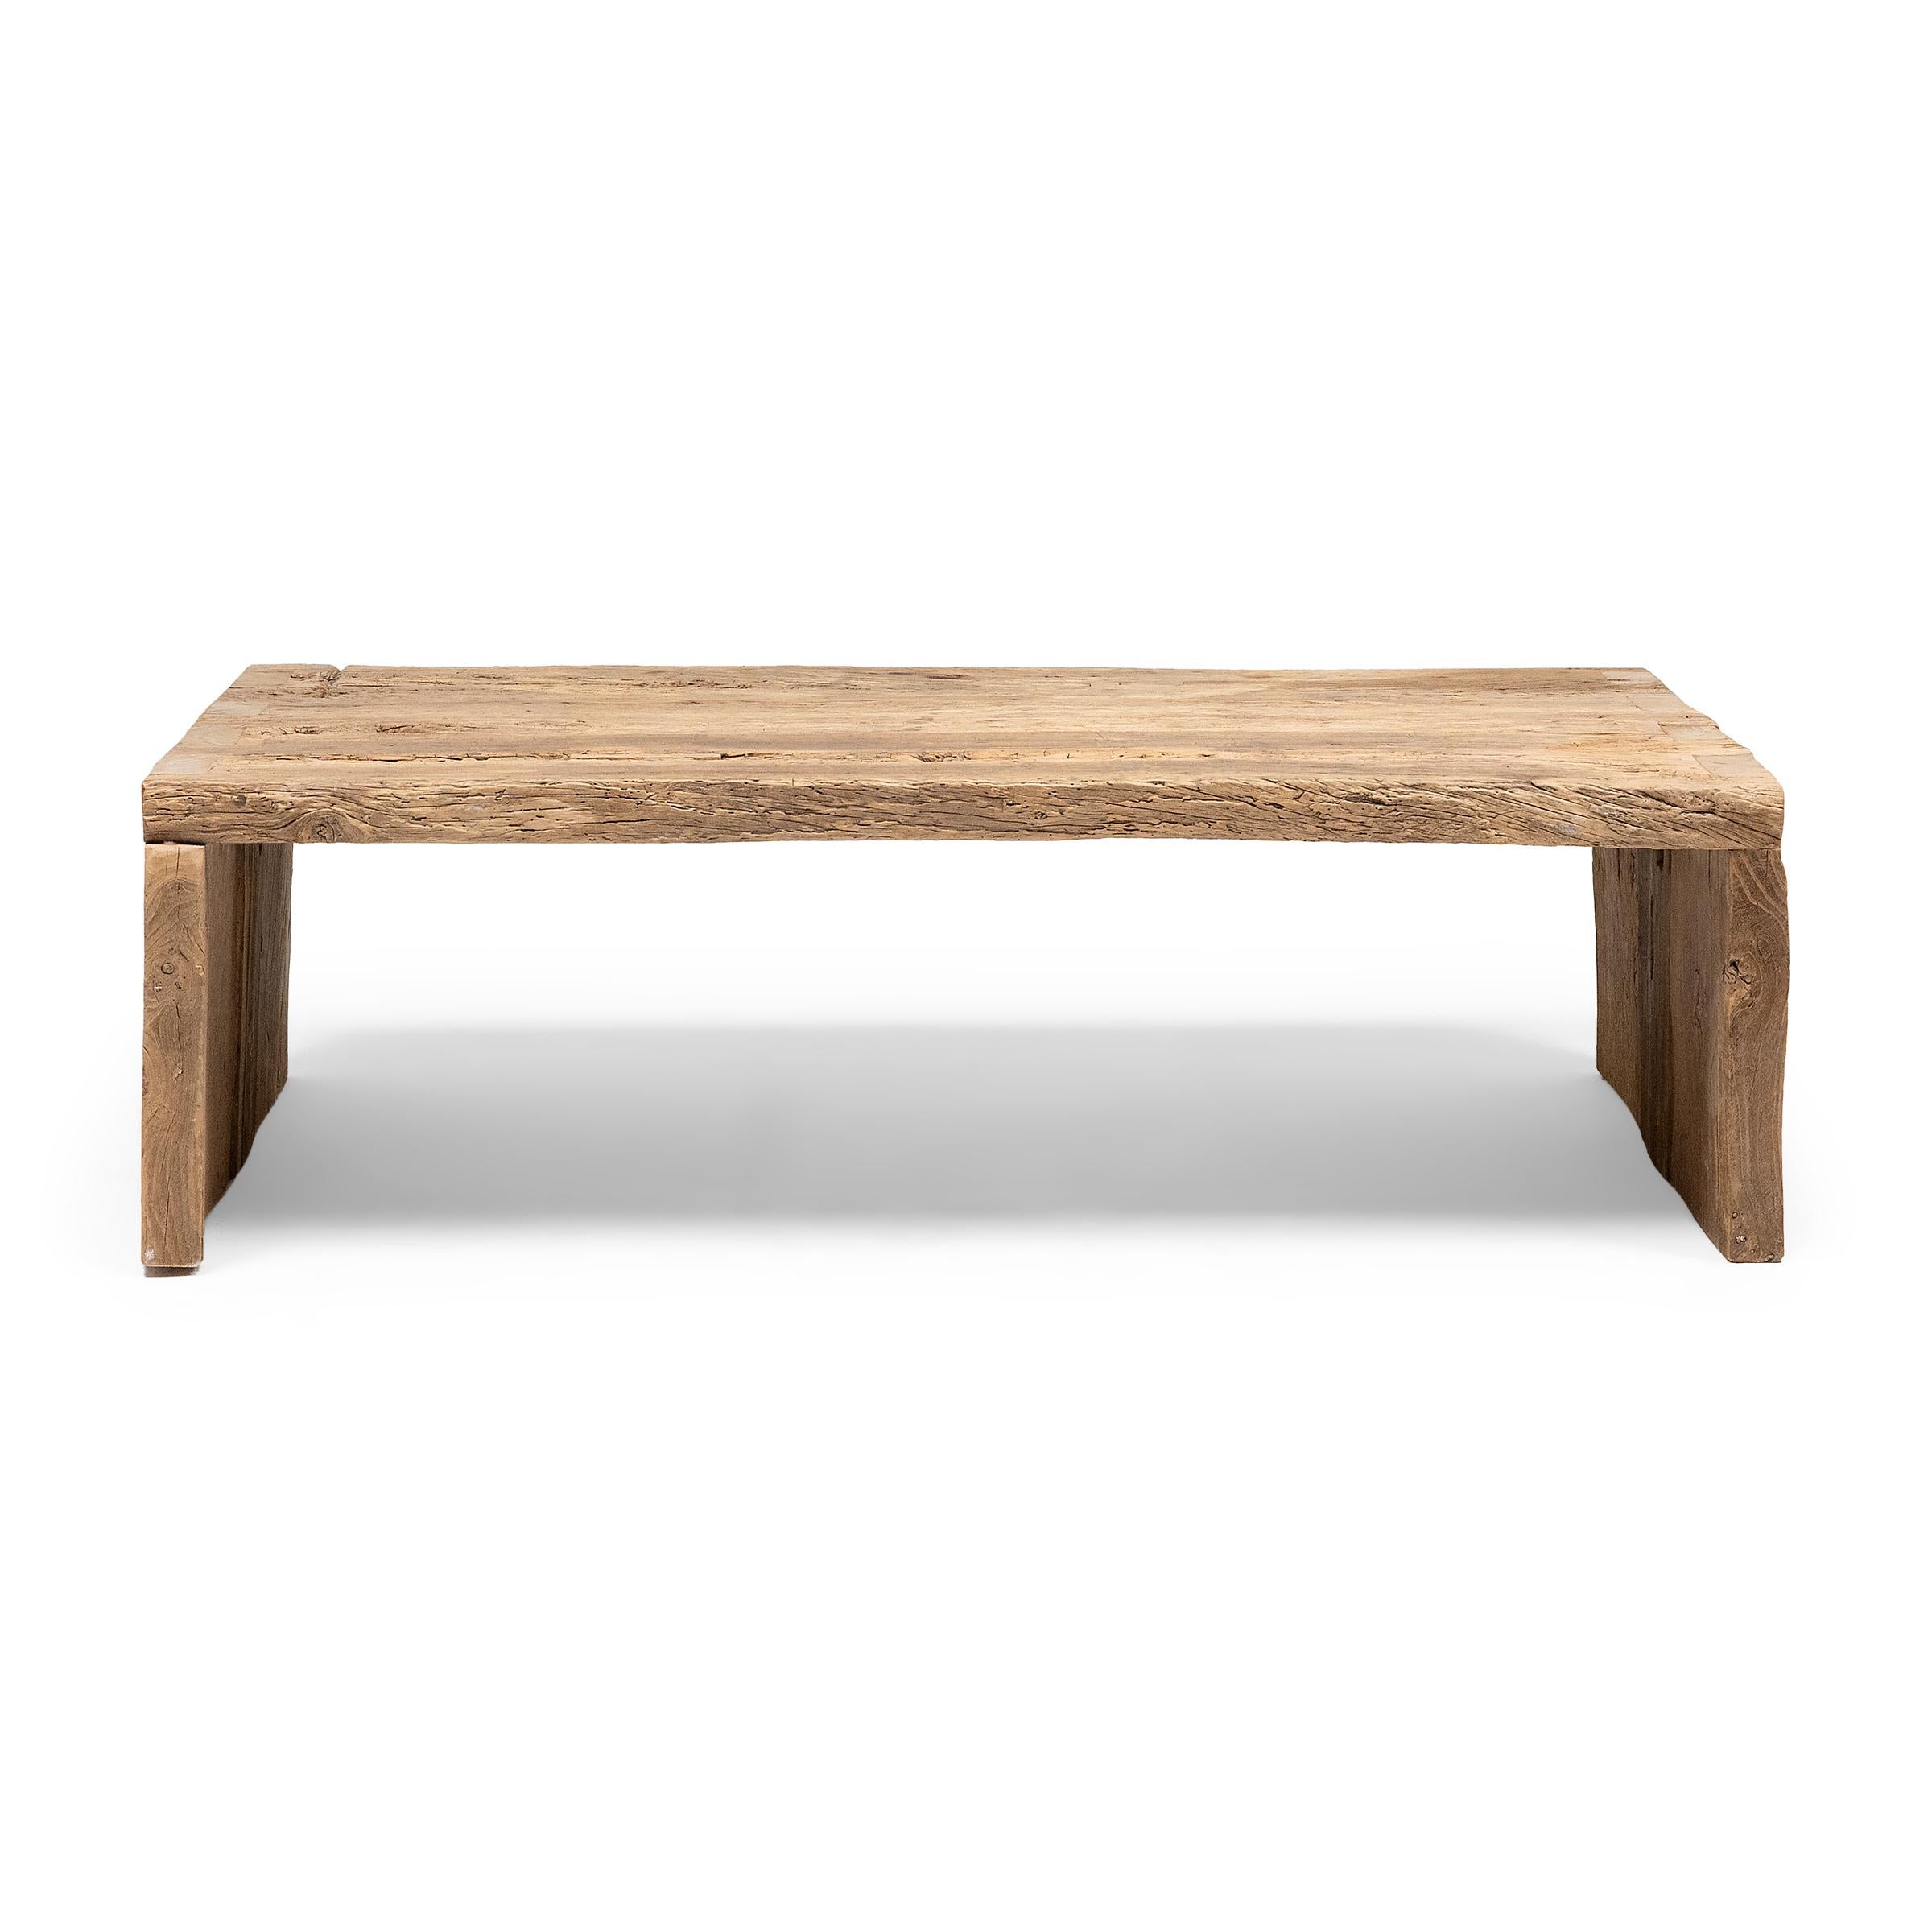 Cette table basse artisanale est une célébration du style wabi-sabi. Fabriquée en bois d'orme épais récupéré de l'architecture de la dynastie Qing, la table présente un design minimaliste en cascade et est laissée brute pour préserver la beauté